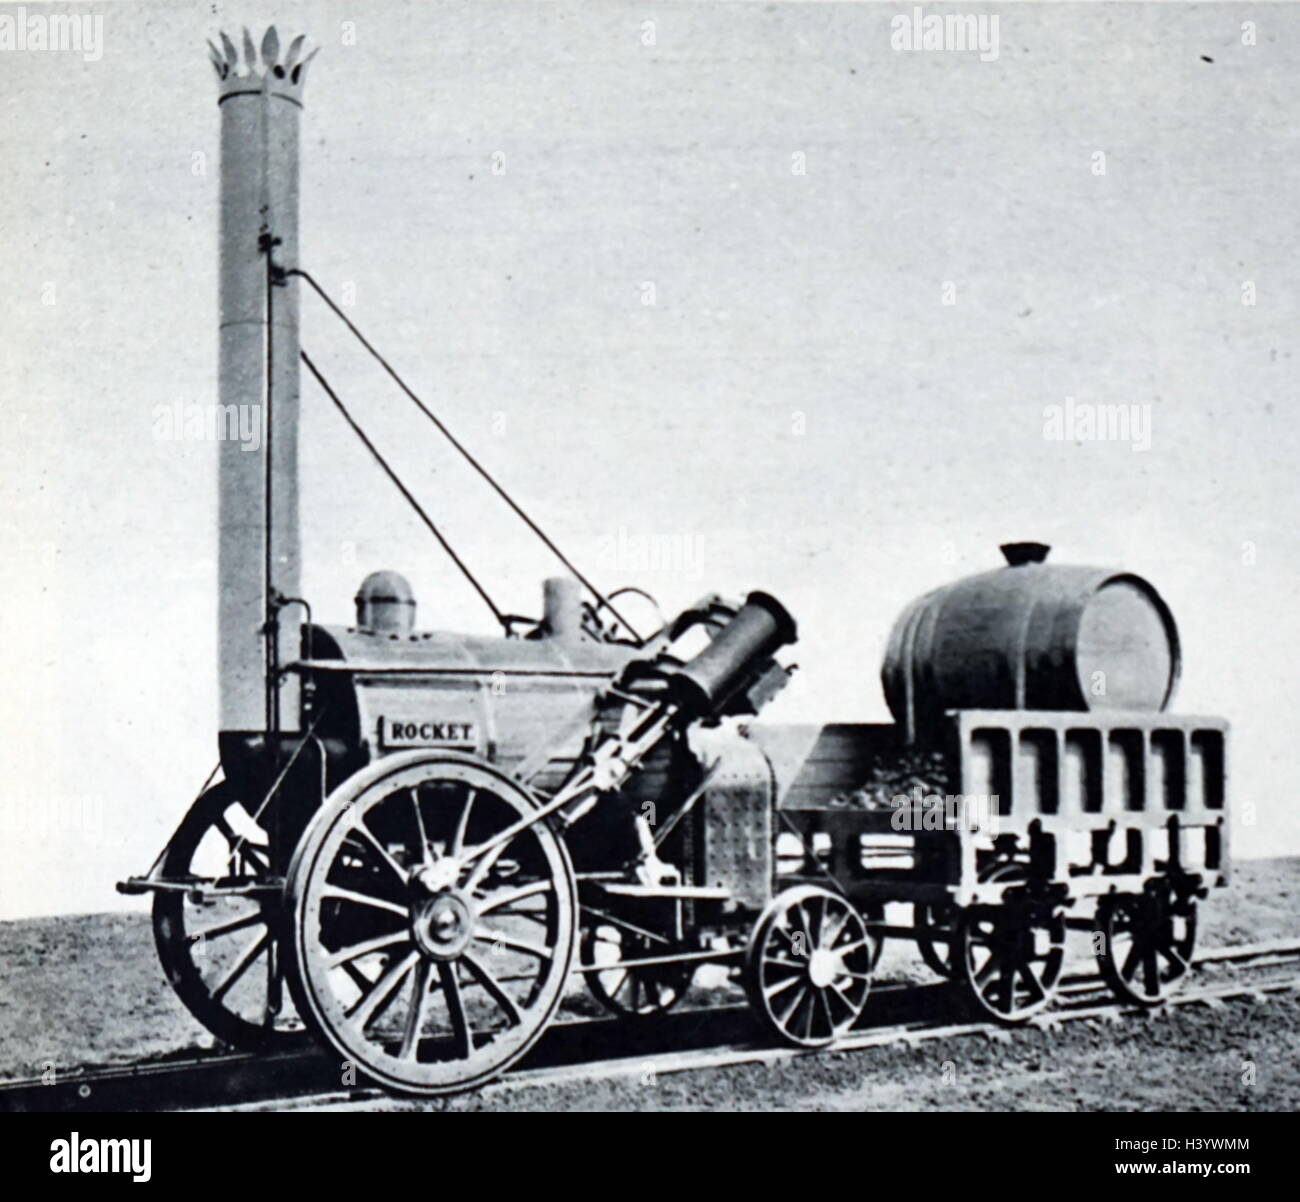 Photographie de George Stephenson's rocket locomotive à vapeur célèbre. En date du 19e siècle Banque D'Images